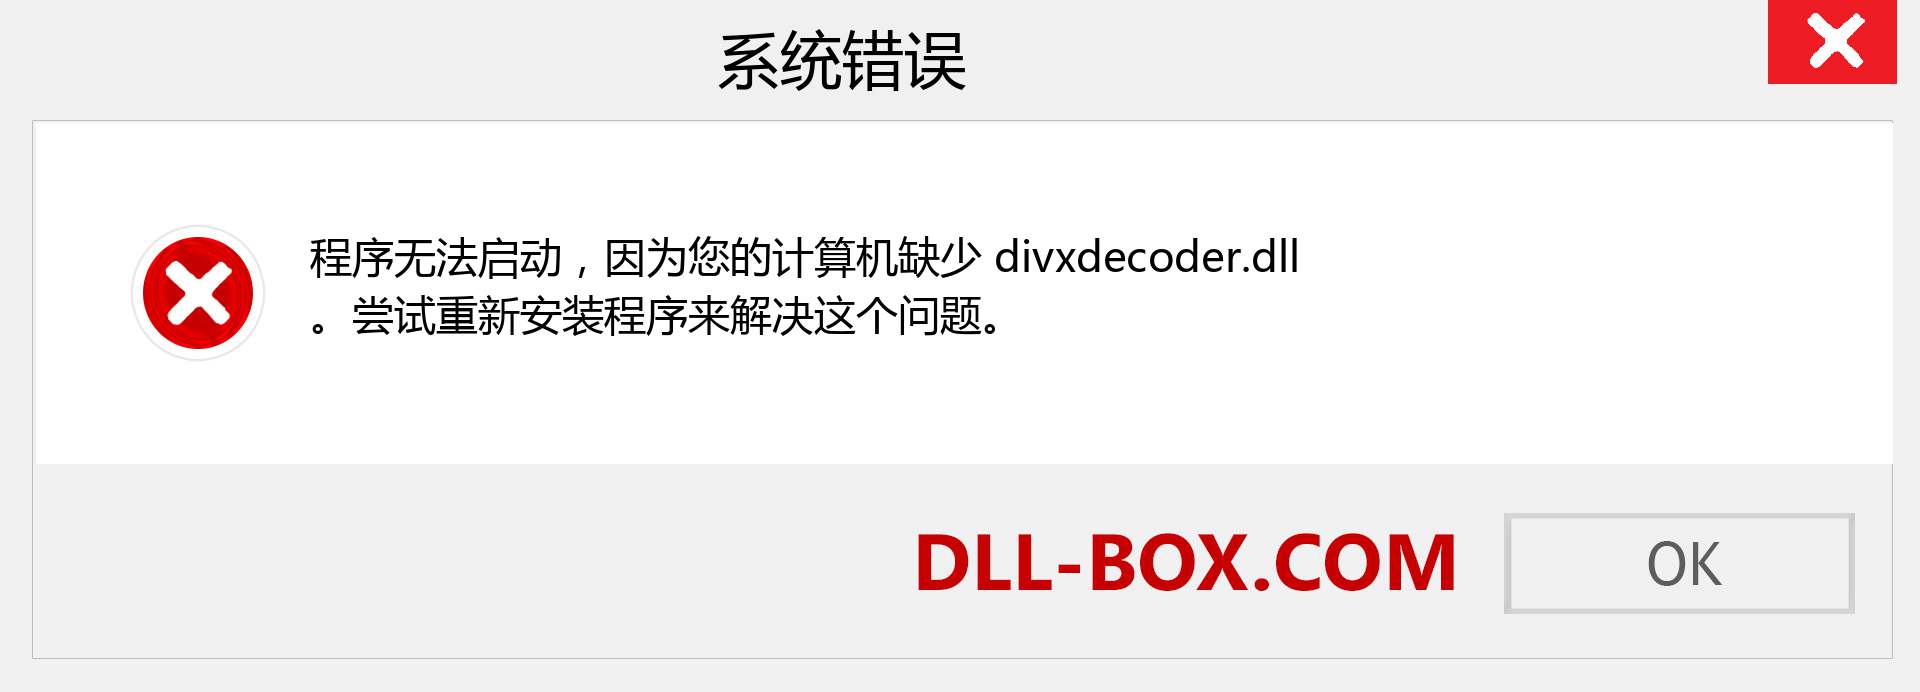 divxdecoder.dll 文件丢失？。 适用于 Windows 7、8、10 的下载 - 修复 Windows、照片、图像上的 divxdecoder dll 丢失错误